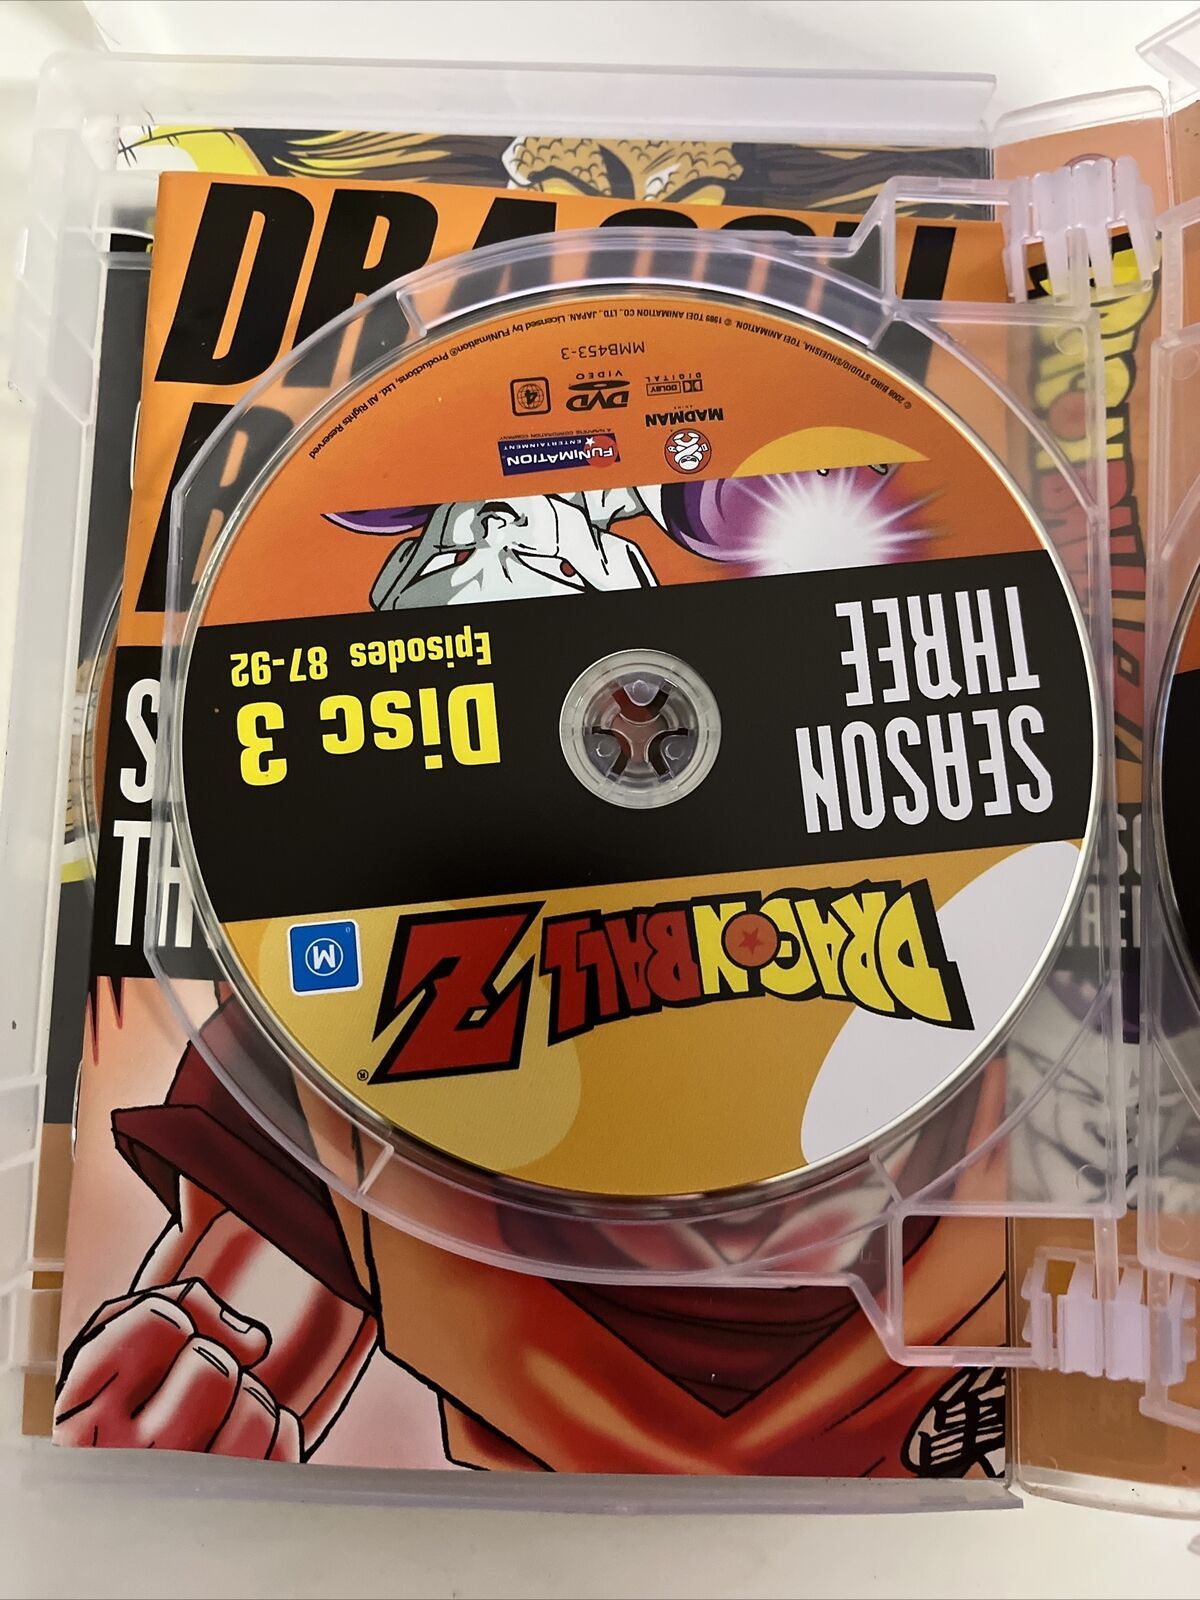 Dragon Ball Z - Season 3 Remastered Uncut DVD Box Set – Cyber City Comix